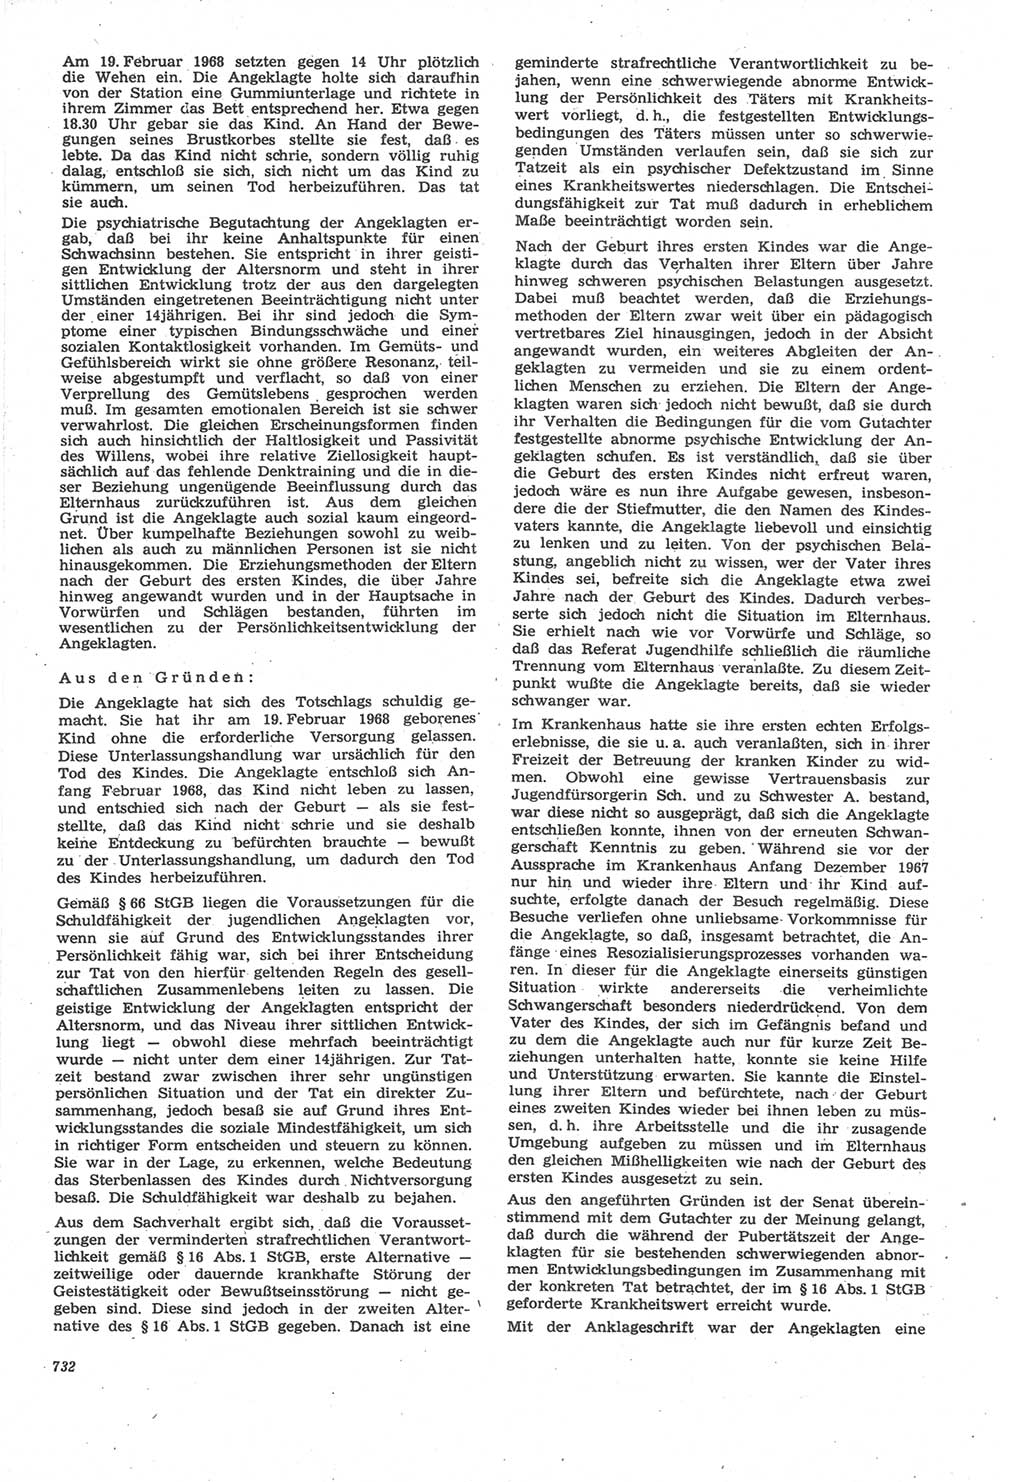 Neue Justiz (NJ), Zeitschrift für Recht und Rechtswissenschaft [Deutsche Demokratische Republik (DDR)], 22. Jahrgang 1968, Seite 732 (NJ DDR 1968, S. 732)